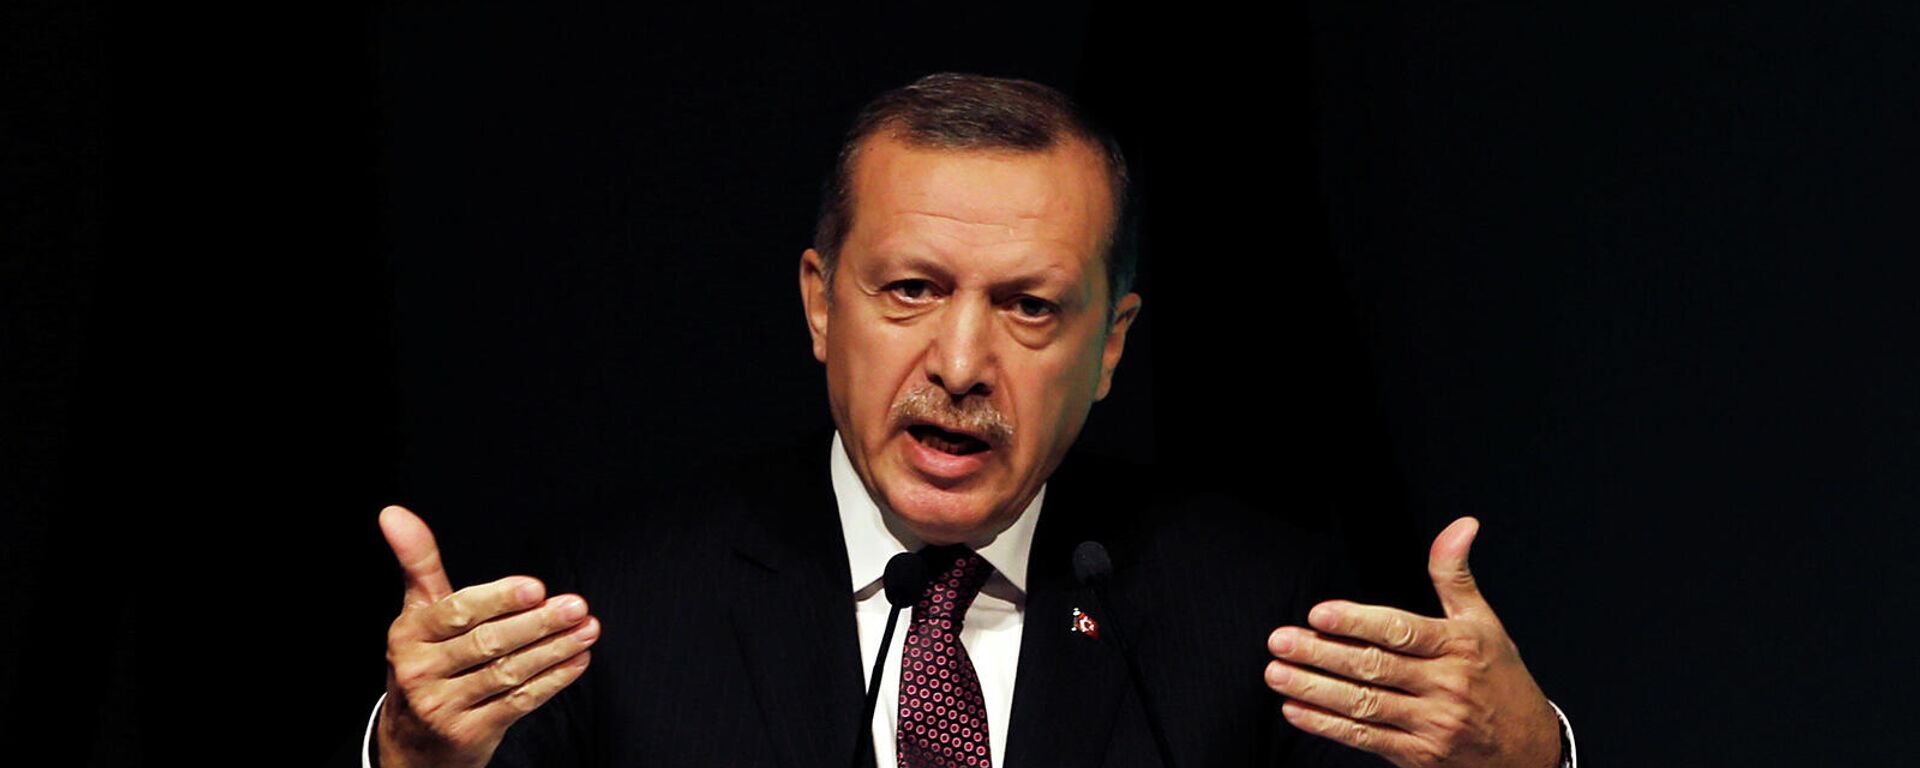 Премьер-миистр Турции Реджеп Тайип Эрдоган выступает с речью на симпозиуме по глобальной политике в отношении алкоголя (26 апреля 2013). Стамбул - Sputnik Армения, 1920, 18.11.2021